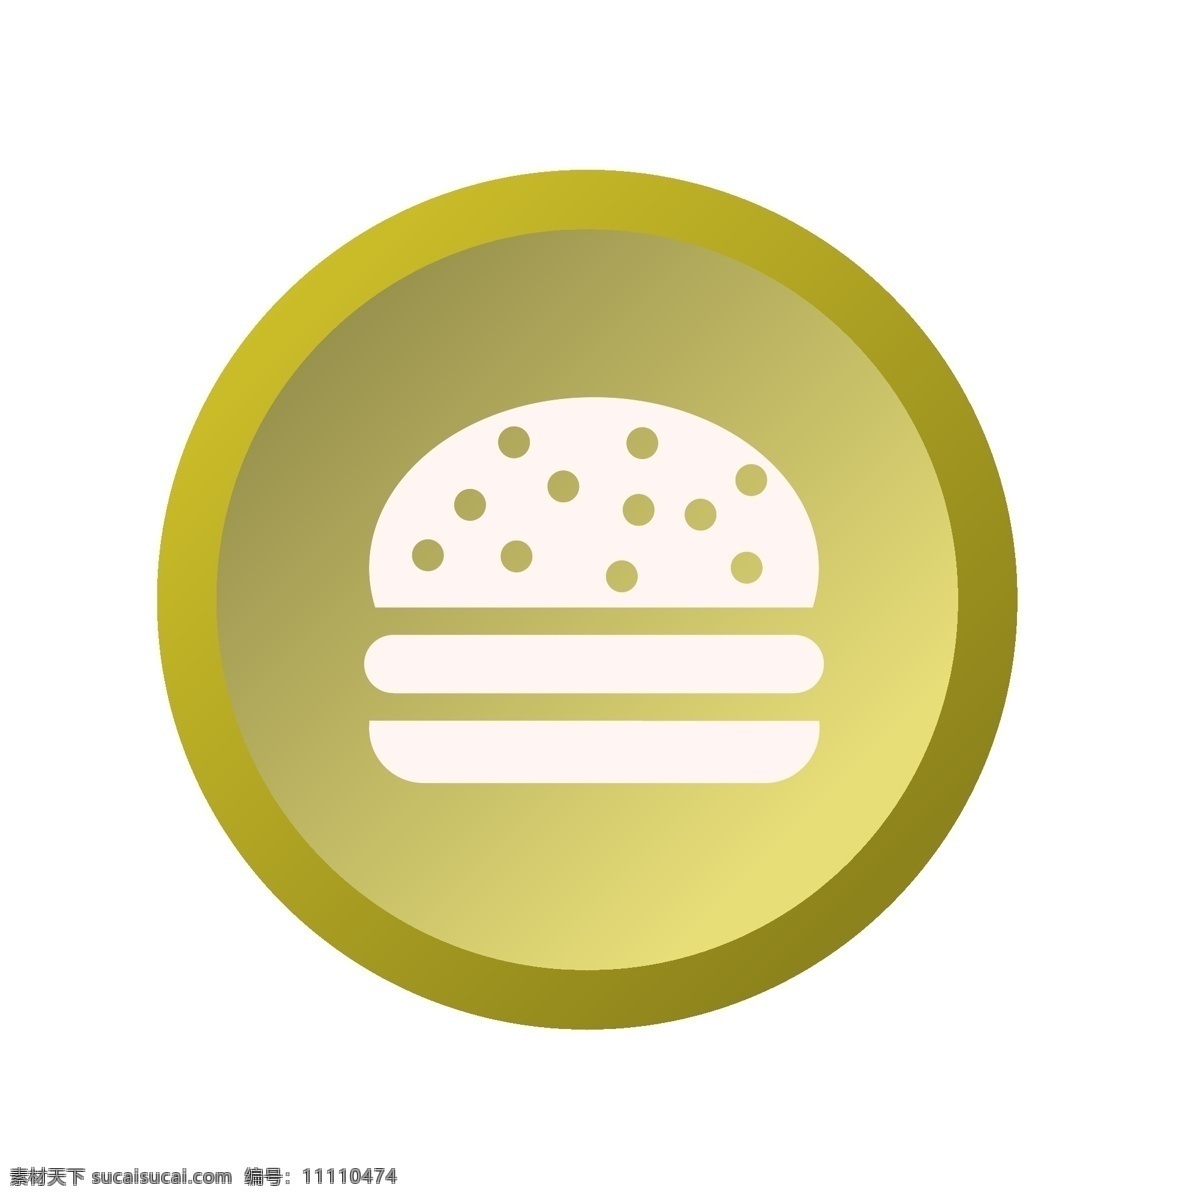 卡通 汉堡包 图标 免 抠 图 美食 3d立体按钮 立体按钮图标 ui应用图标 卡通图案 卡通插画 网页图标 免抠图